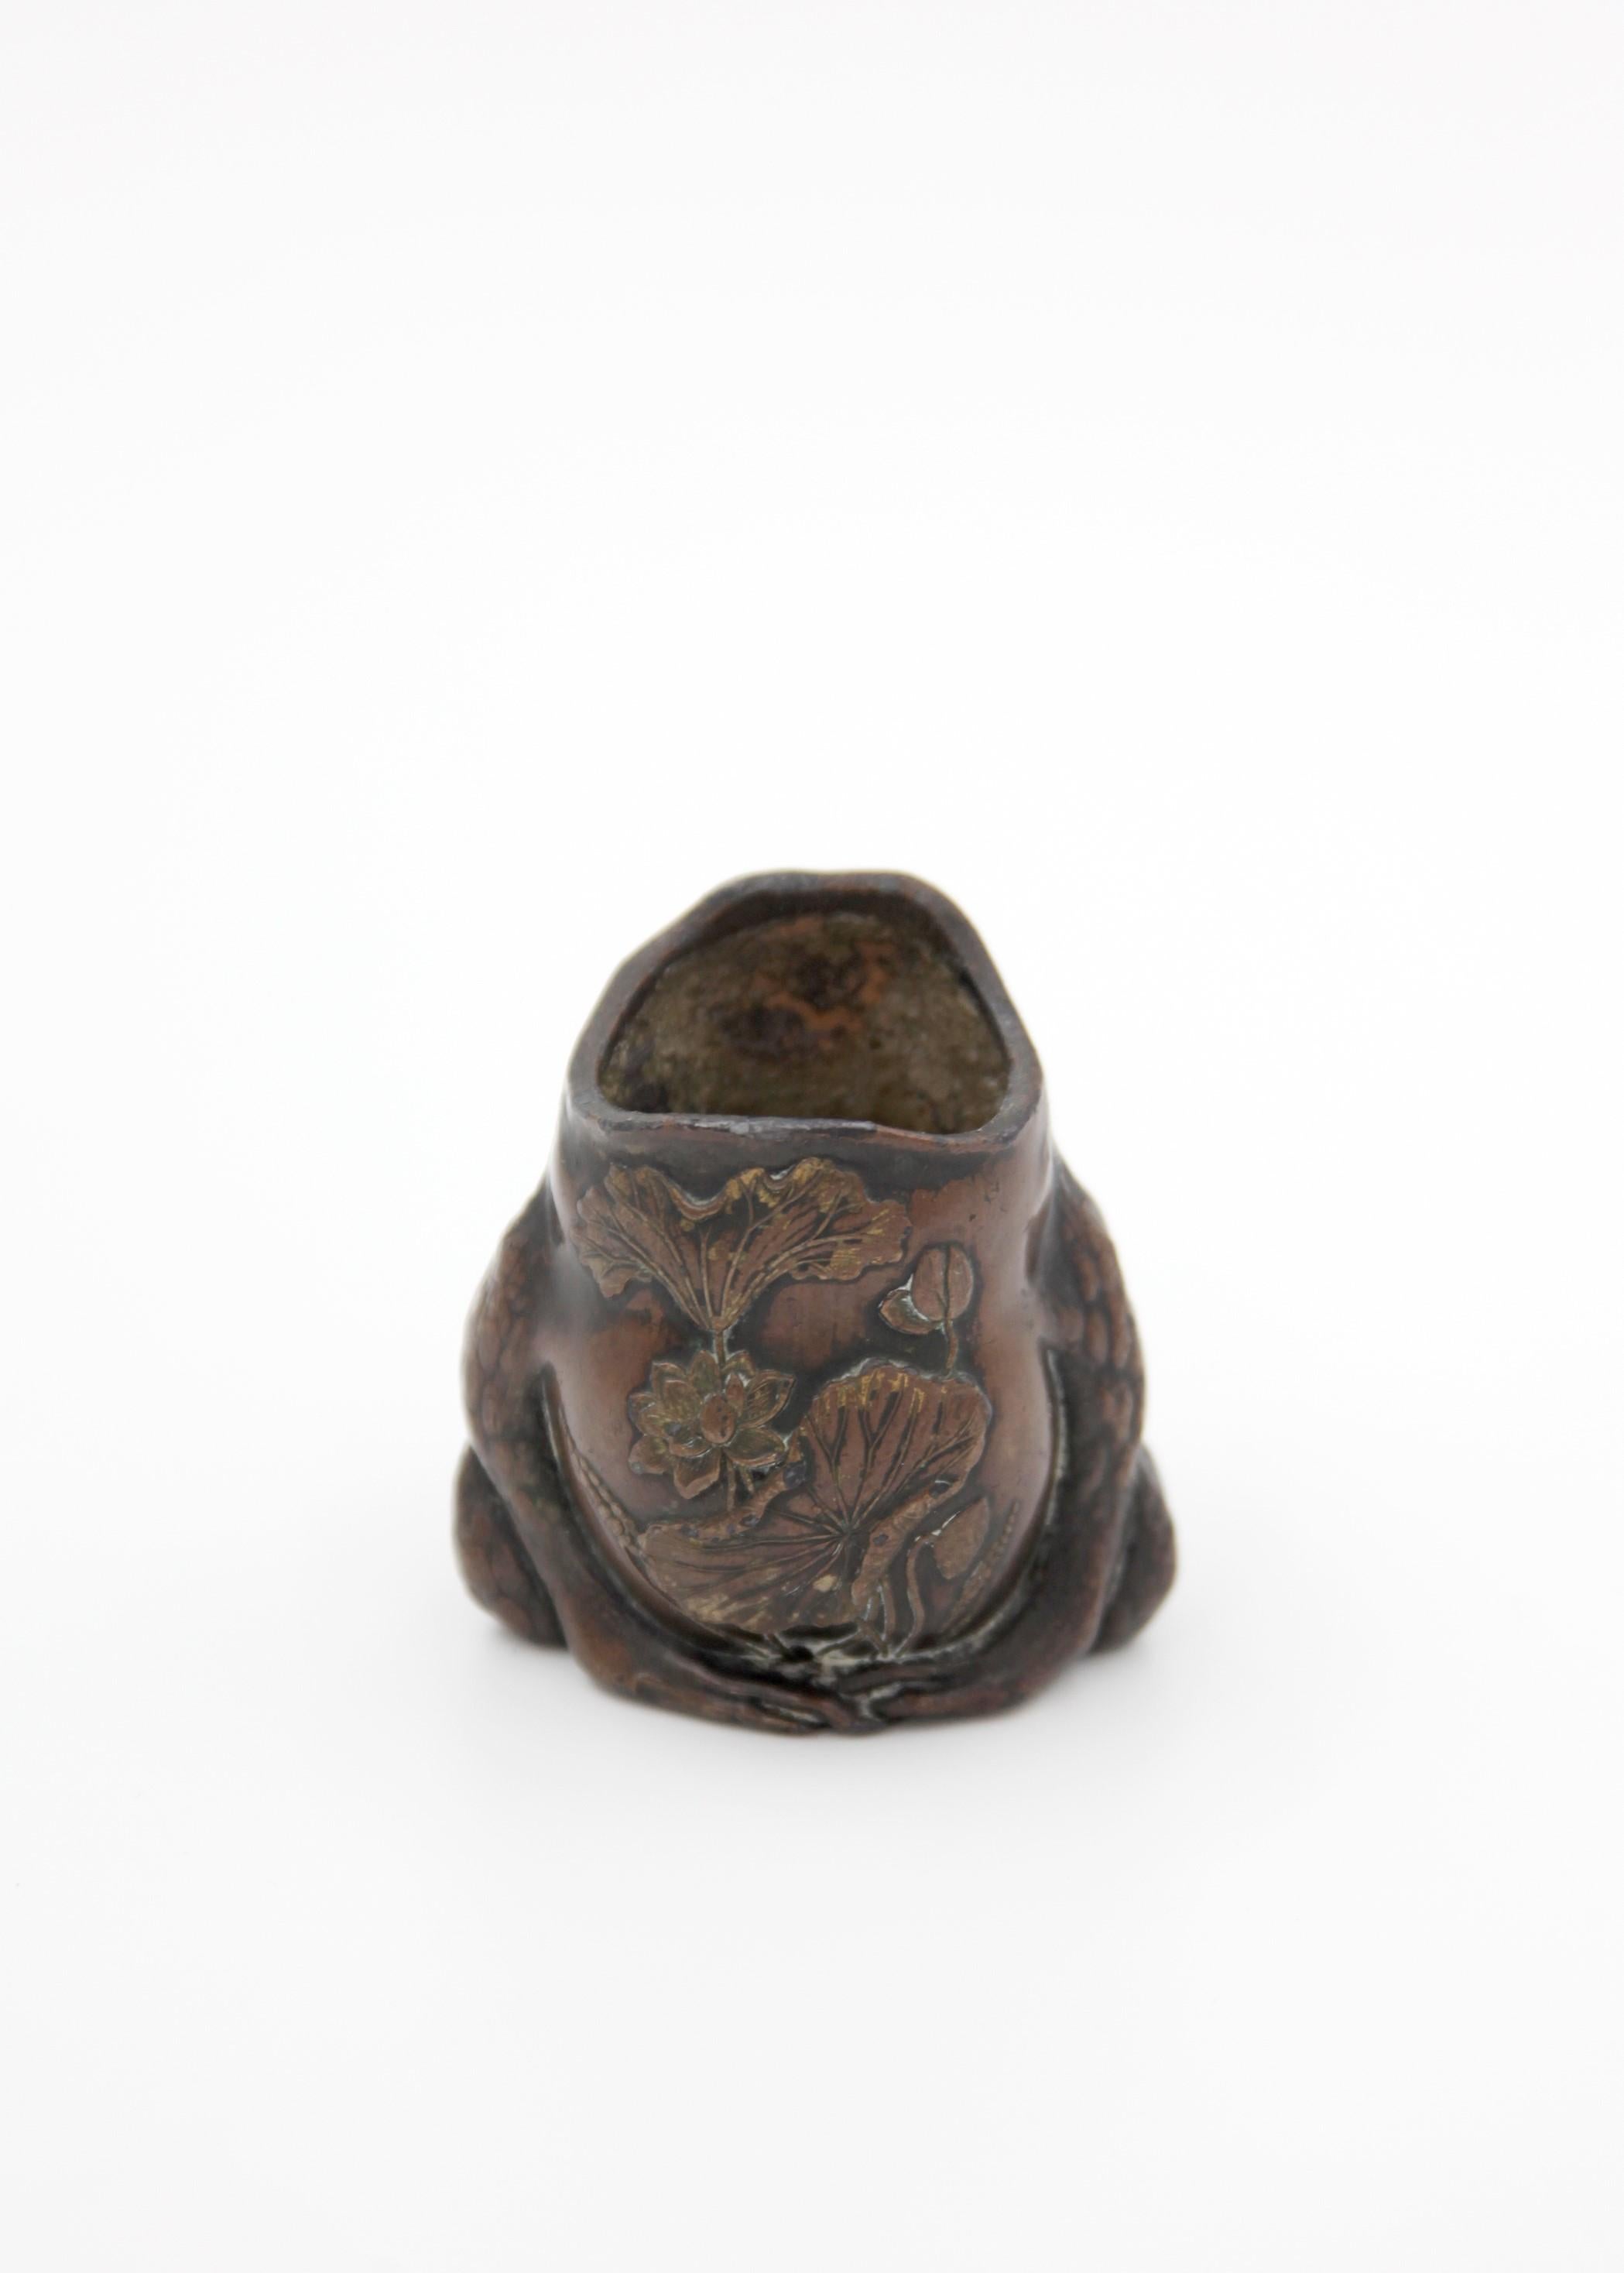 Genießen Sie eine Portion purer Skurrilität mit diesem einzigartigen Löffelwärmer aus Bronze im Jugendstil in Form einer Kröte. Es spiegelt einen einzigartigen Aspekt der Kunst des späten 19. bis frühen 20. Jahrhunderts wider und ist sowohl ein